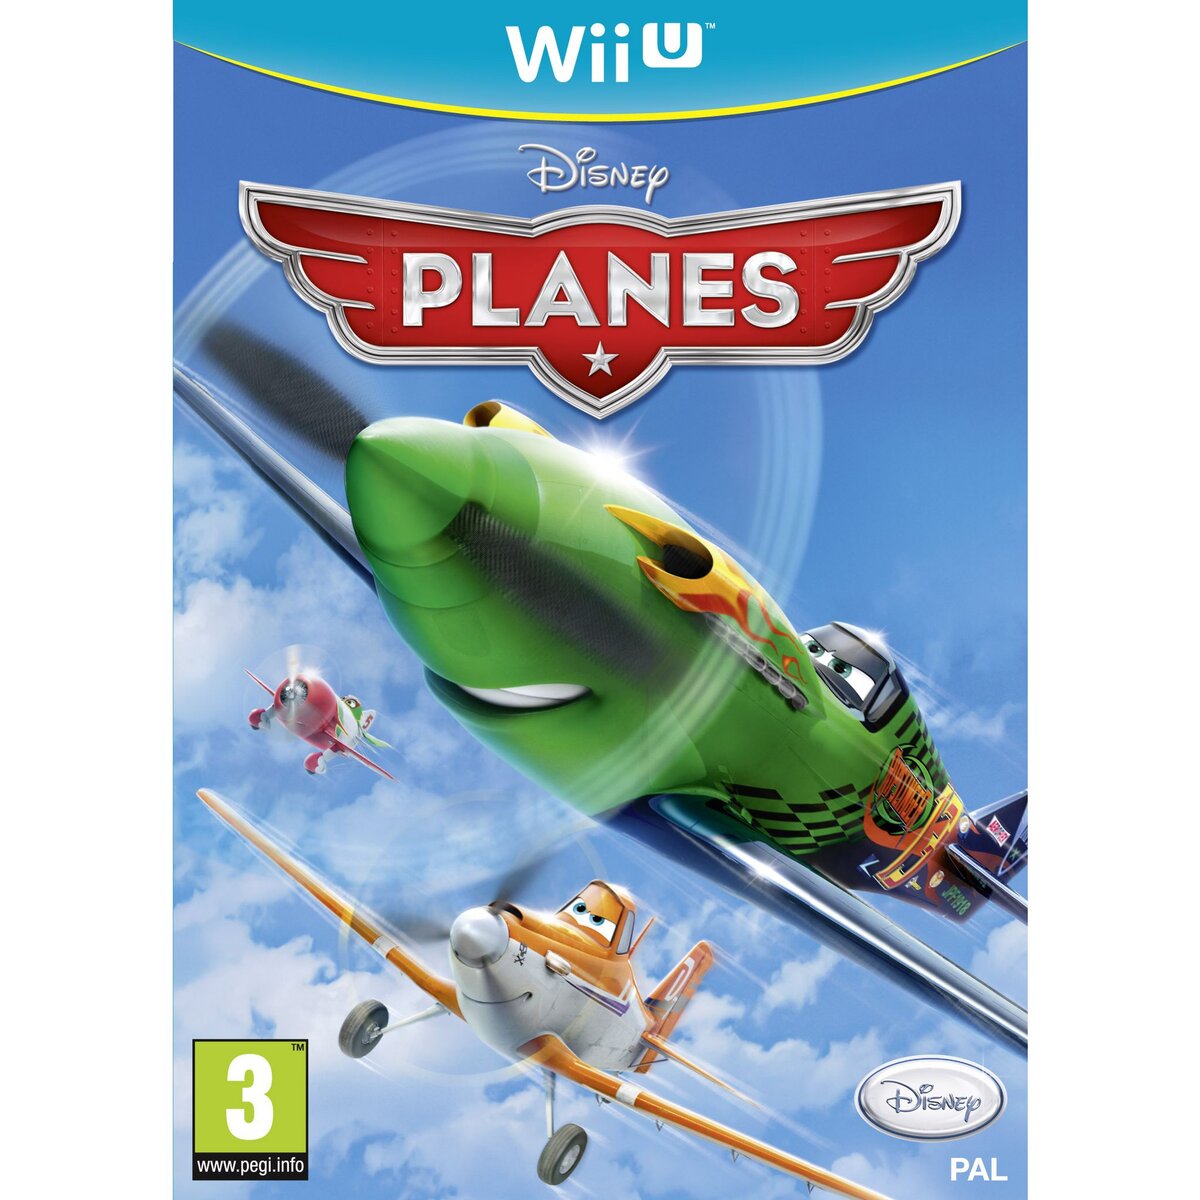 Planes Wii U